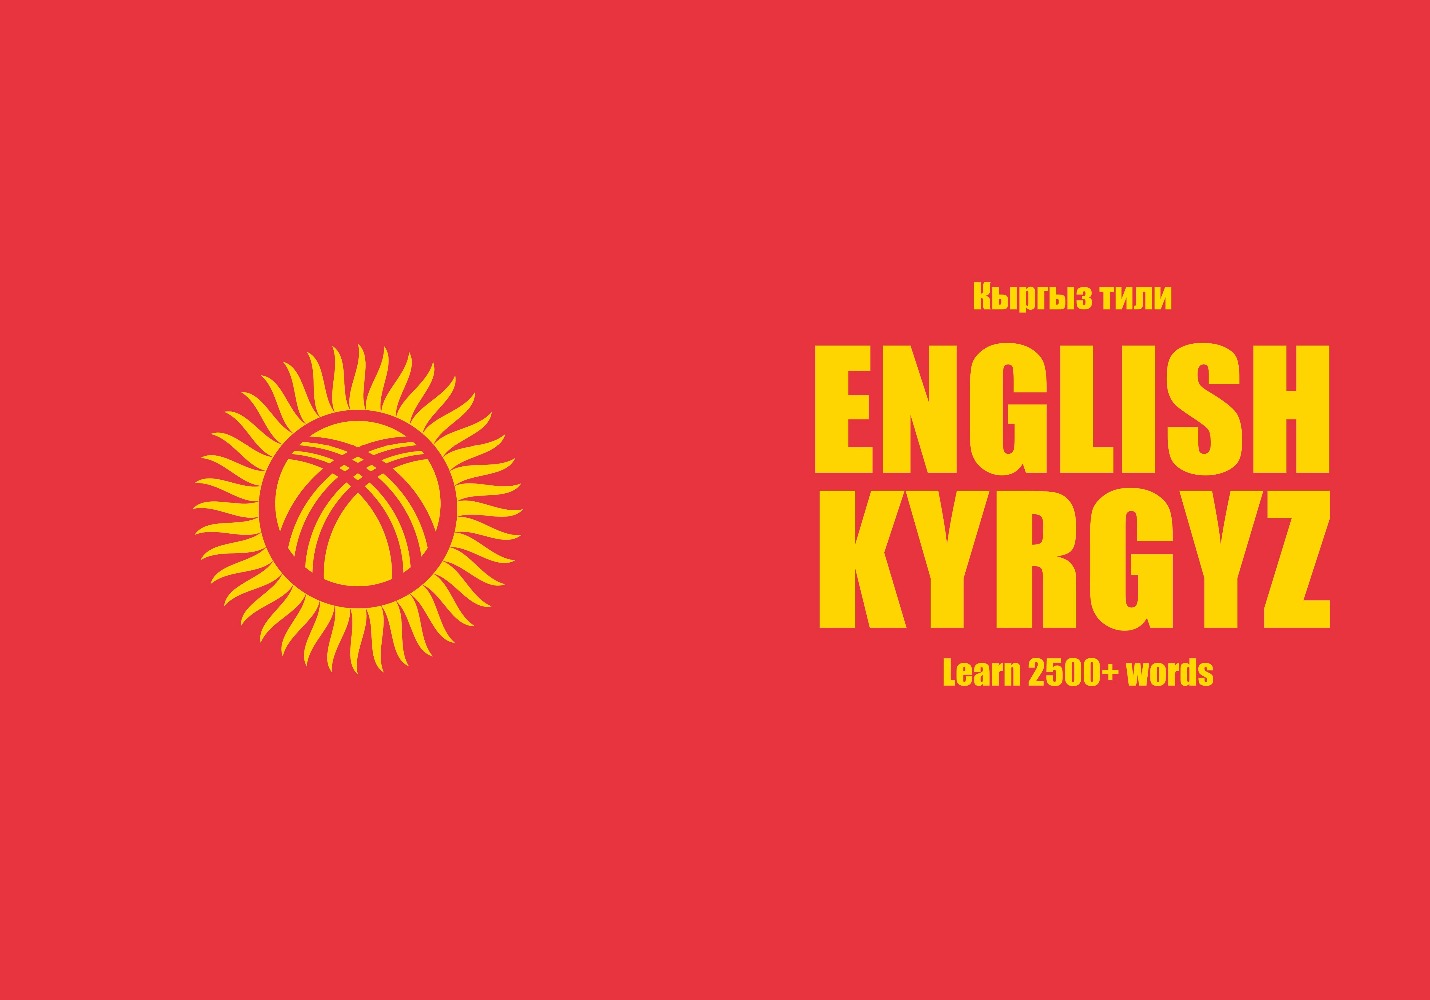 英語-キルギス語穴埋めノート